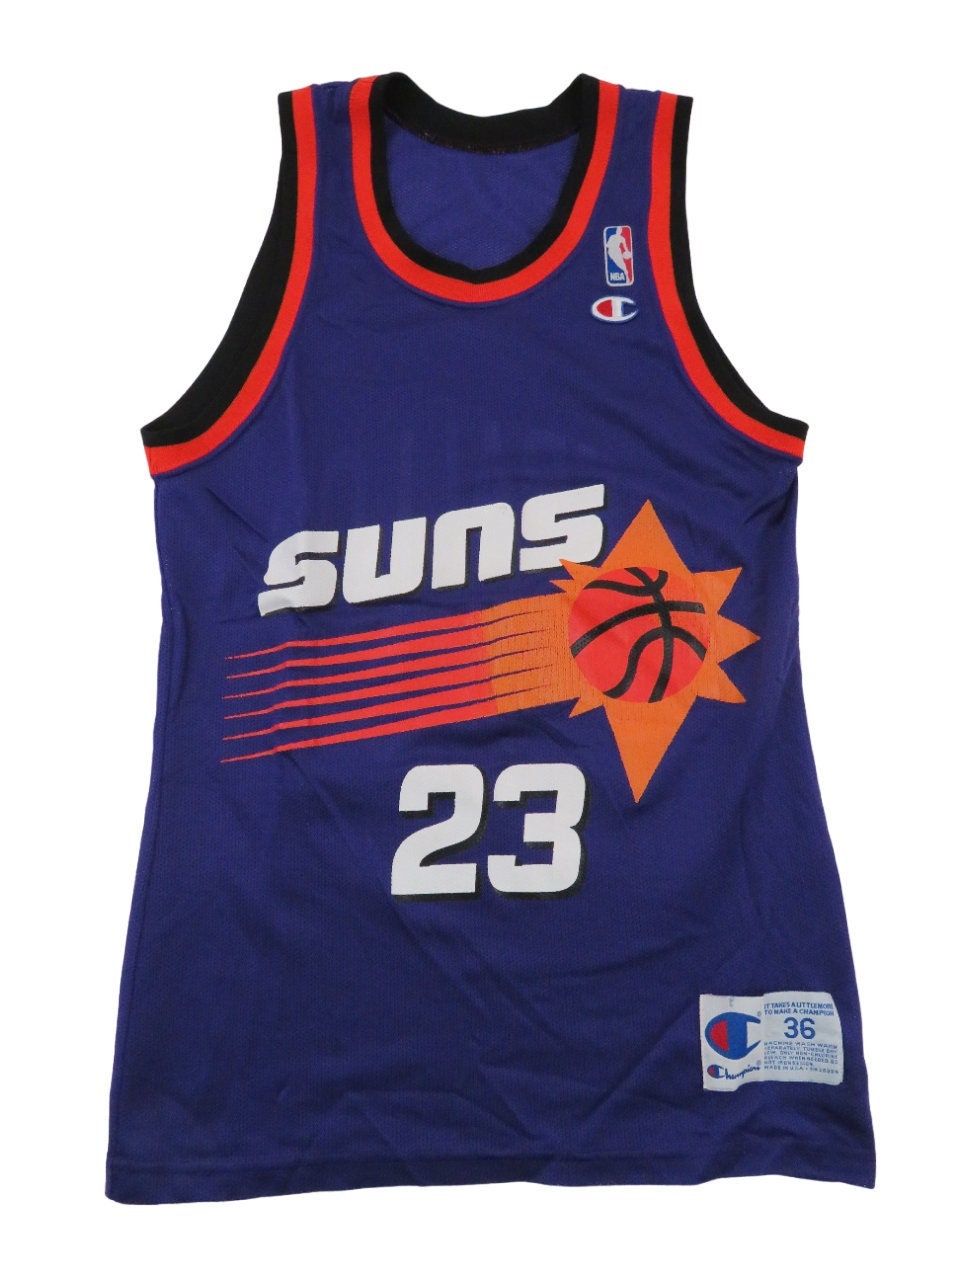 Rare Phoenix Suns Stephon Marbury Stitched Reebok Basketball Jersey Mens 56